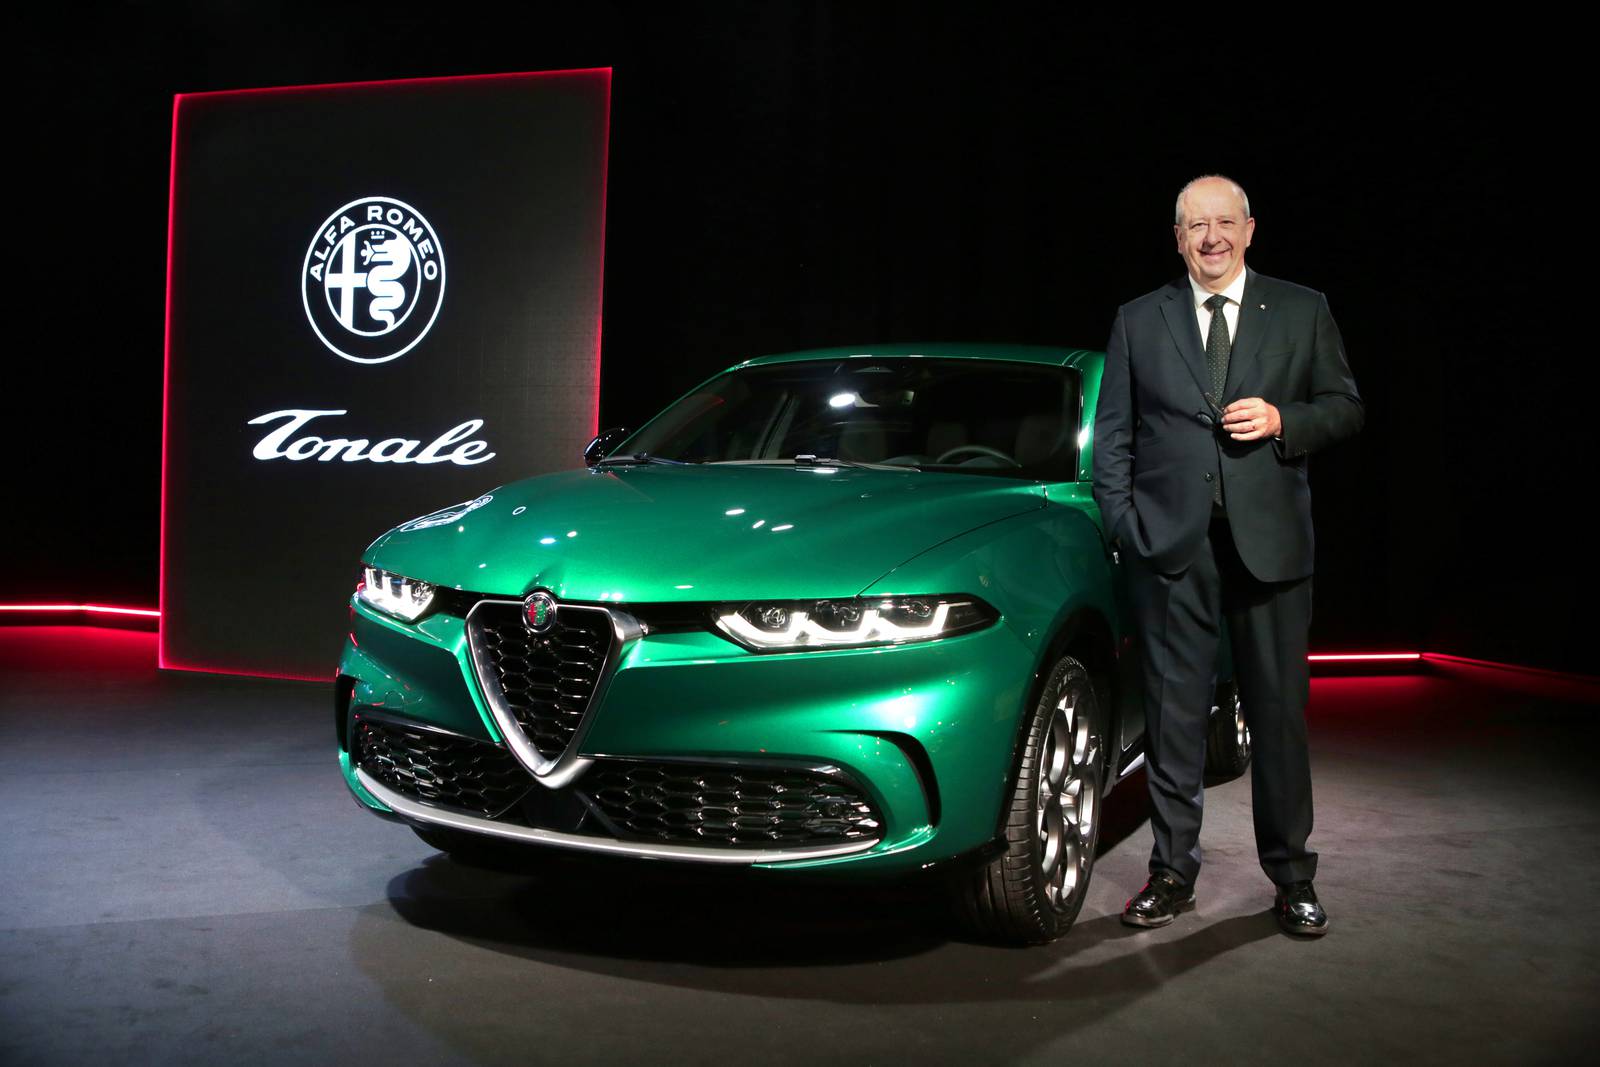 Alfa Romeo CEO Jean-Philippe Imparato with the new Tonale crossover